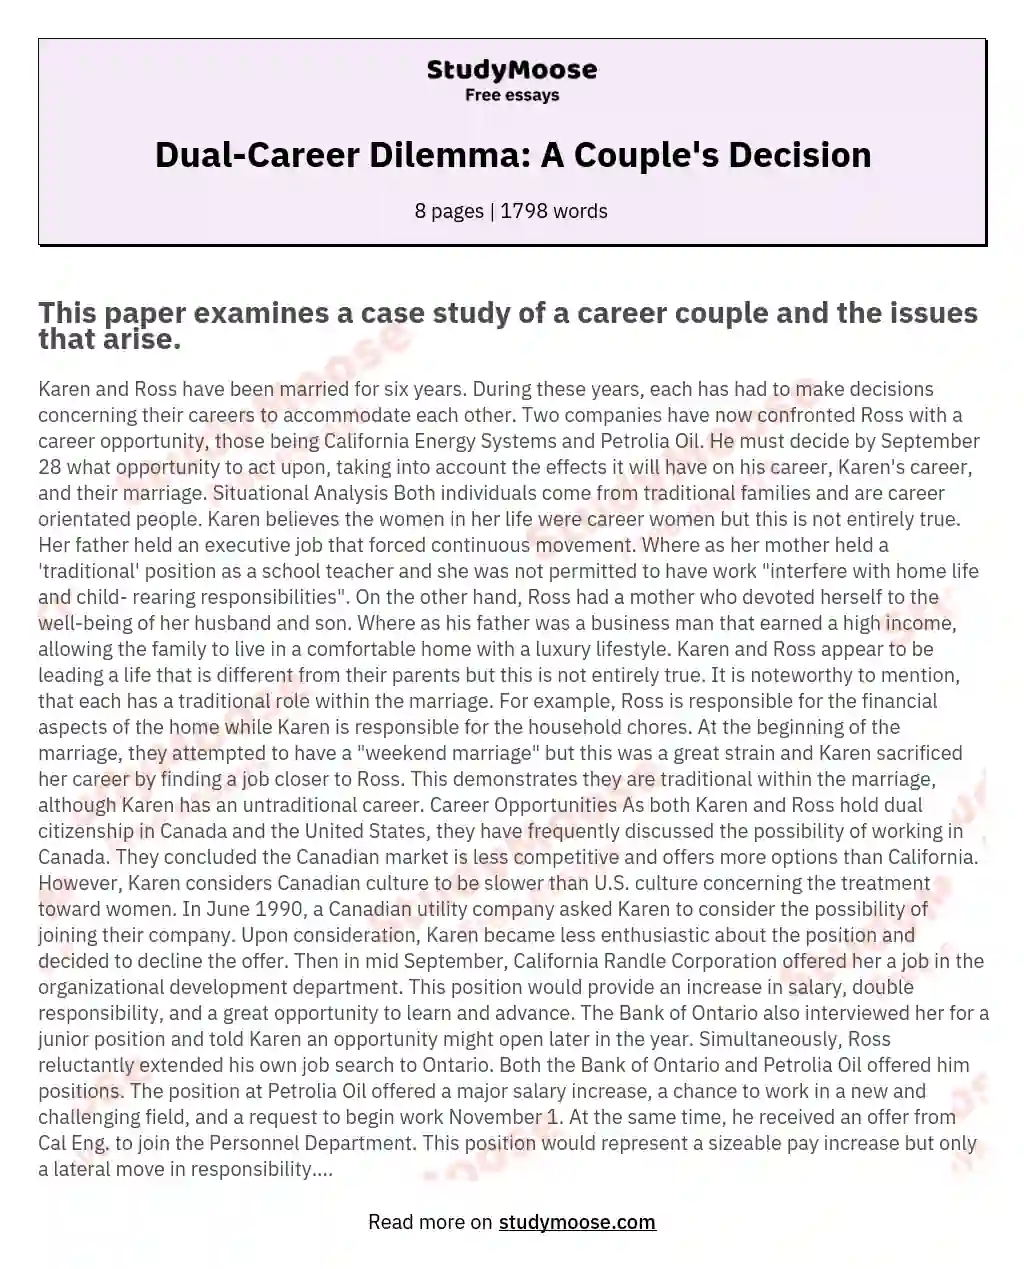 Dual-Career Dilemma: A Couple's Decision essay